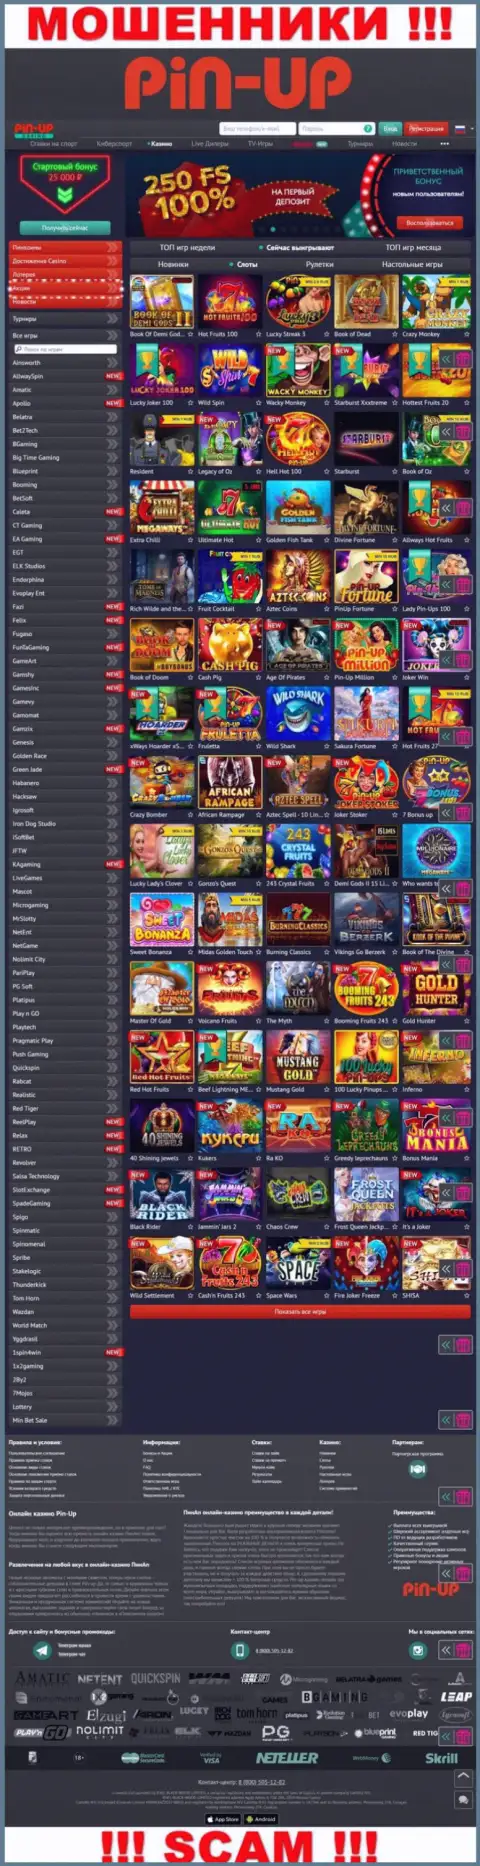 Pin-Up Casino - это официальный web-сервис мошенников Пин Ап Казино